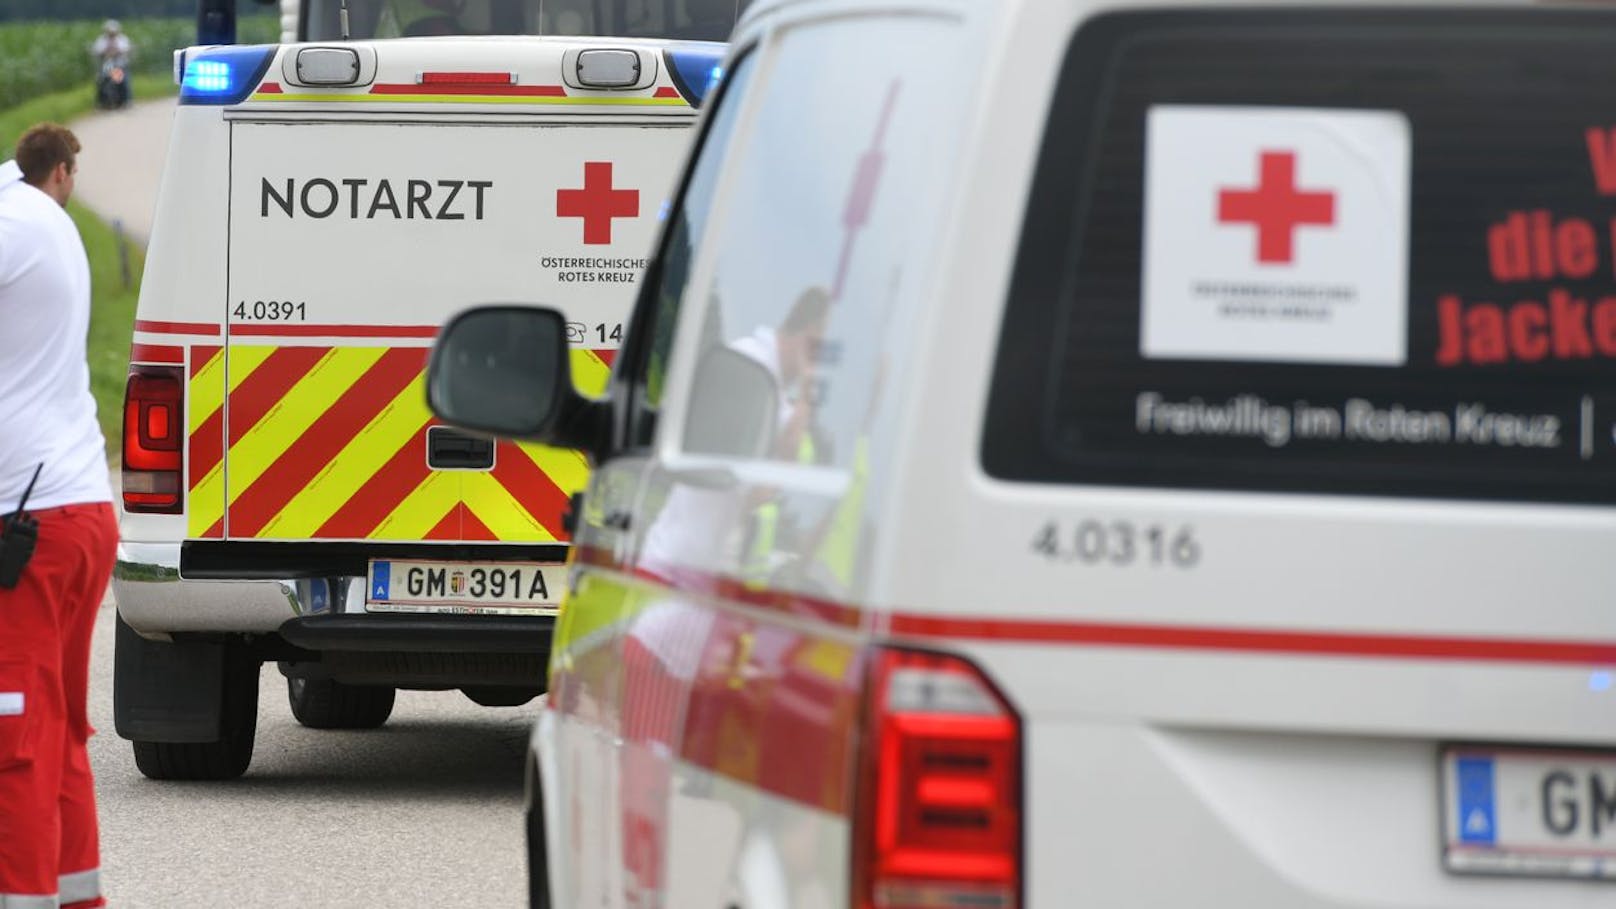 Mann (46) lag tot in Wiener Wohnung, Polizei klärt Fall